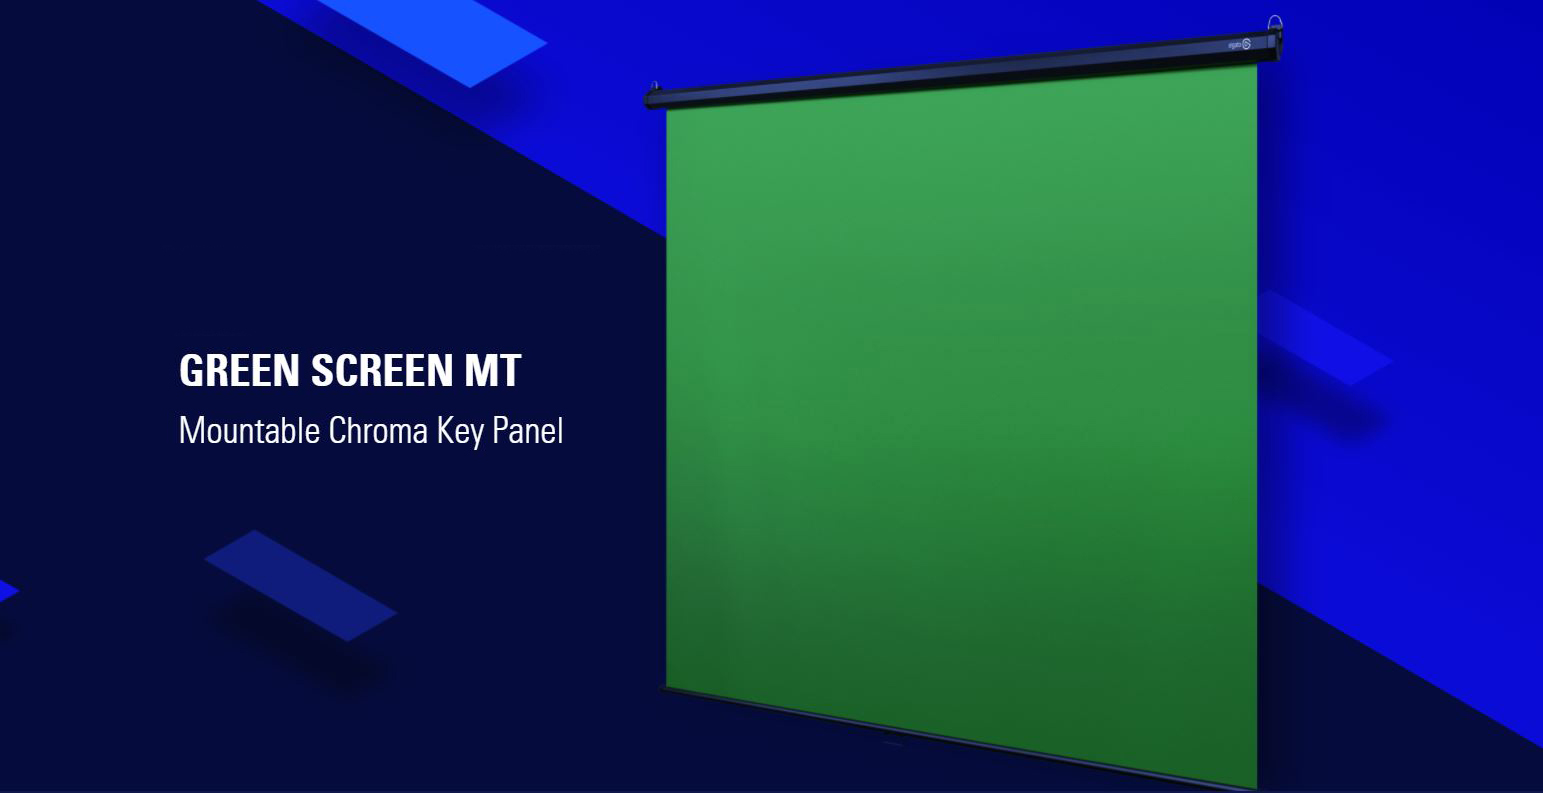 Phông xanh Elgato Green Screen MT là giải pháp lý tưởng cho người dùng cá nhân hoặc công ty sản xuất video chuyên nghiệp. Dù bạn đang quay phim ngoài trời hay trong studio, phông xanh Elgato sẽ giúp bạn tạo ra những video chất lượng cao mà không cần nhiều thời gian để thiết lập. Với các tính năng thông minh như tự động ổn định ánh sáng, phông xanh này sẽ giúp cho quá trình sản xuất trở nên dễ dàng và tiết kiệm thời gian.